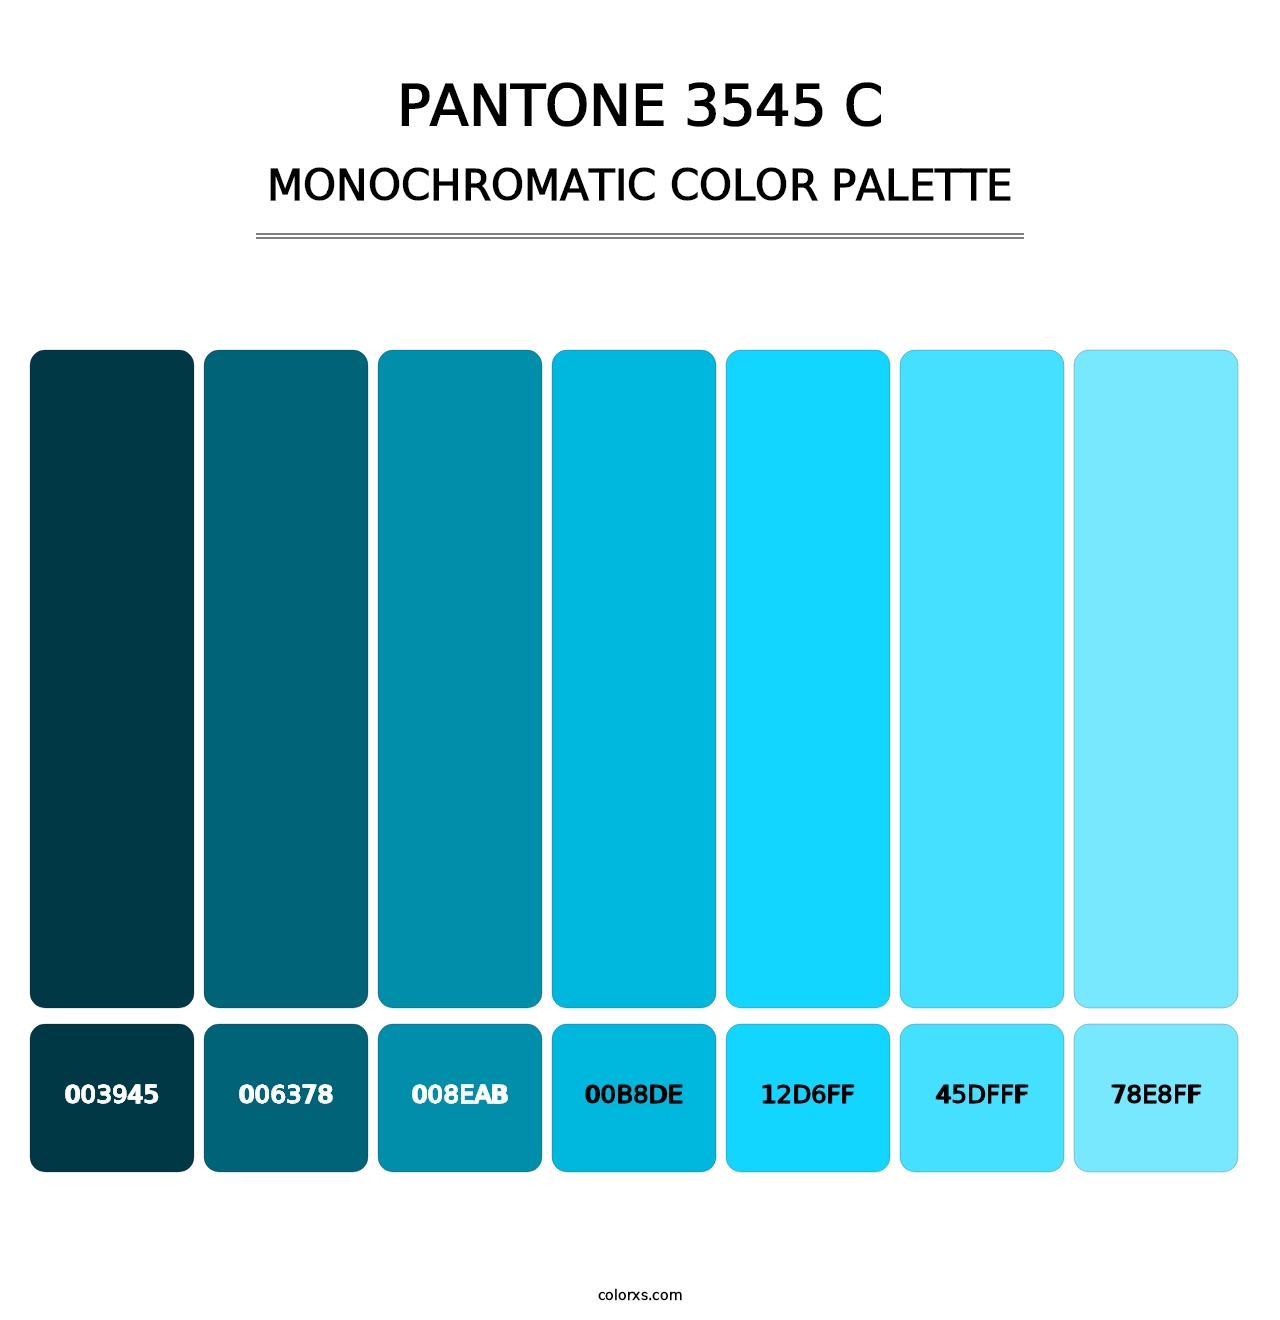 PANTONE 3545 C - Monochromatic Color Palette